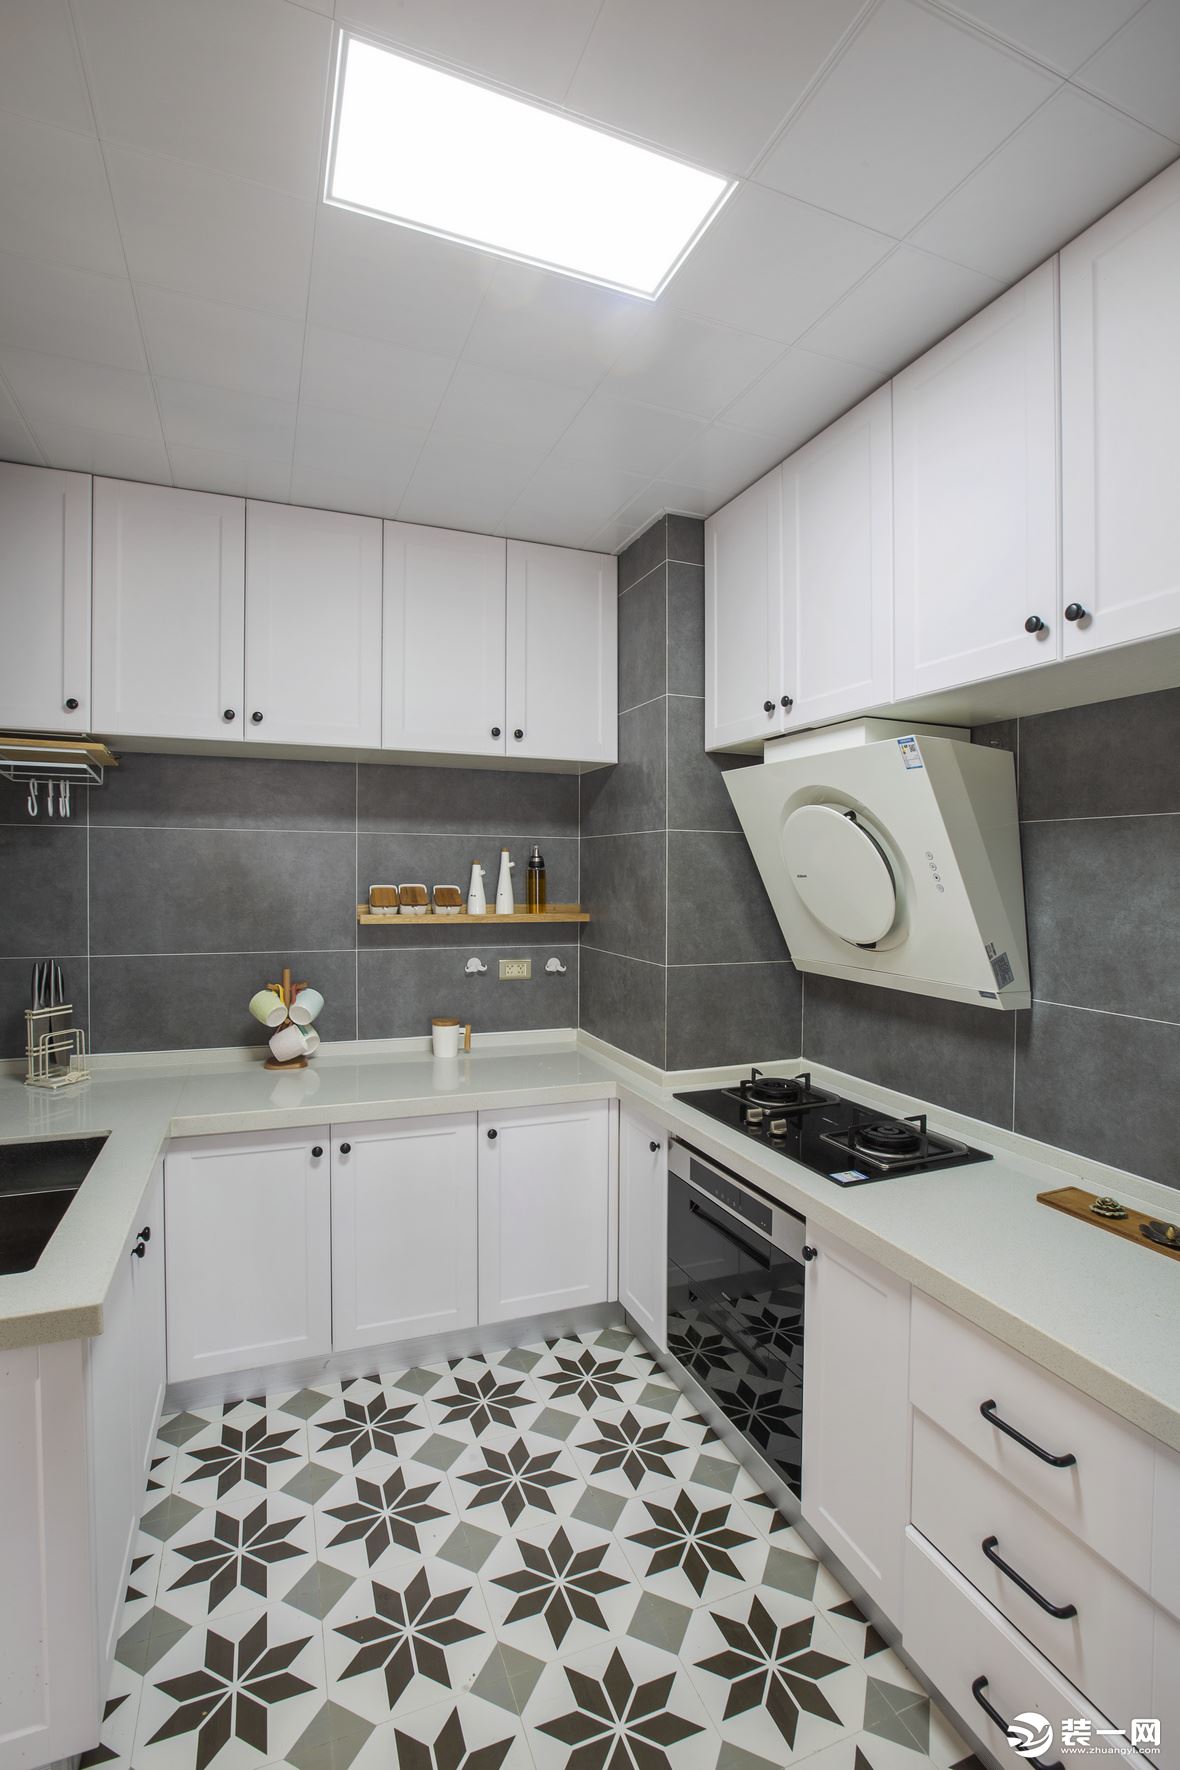 客户在家做饭比较少，所以厨房用了白色橱柜，墙面用了颜色较深的黑色瓷砖。客户厨房是整个房